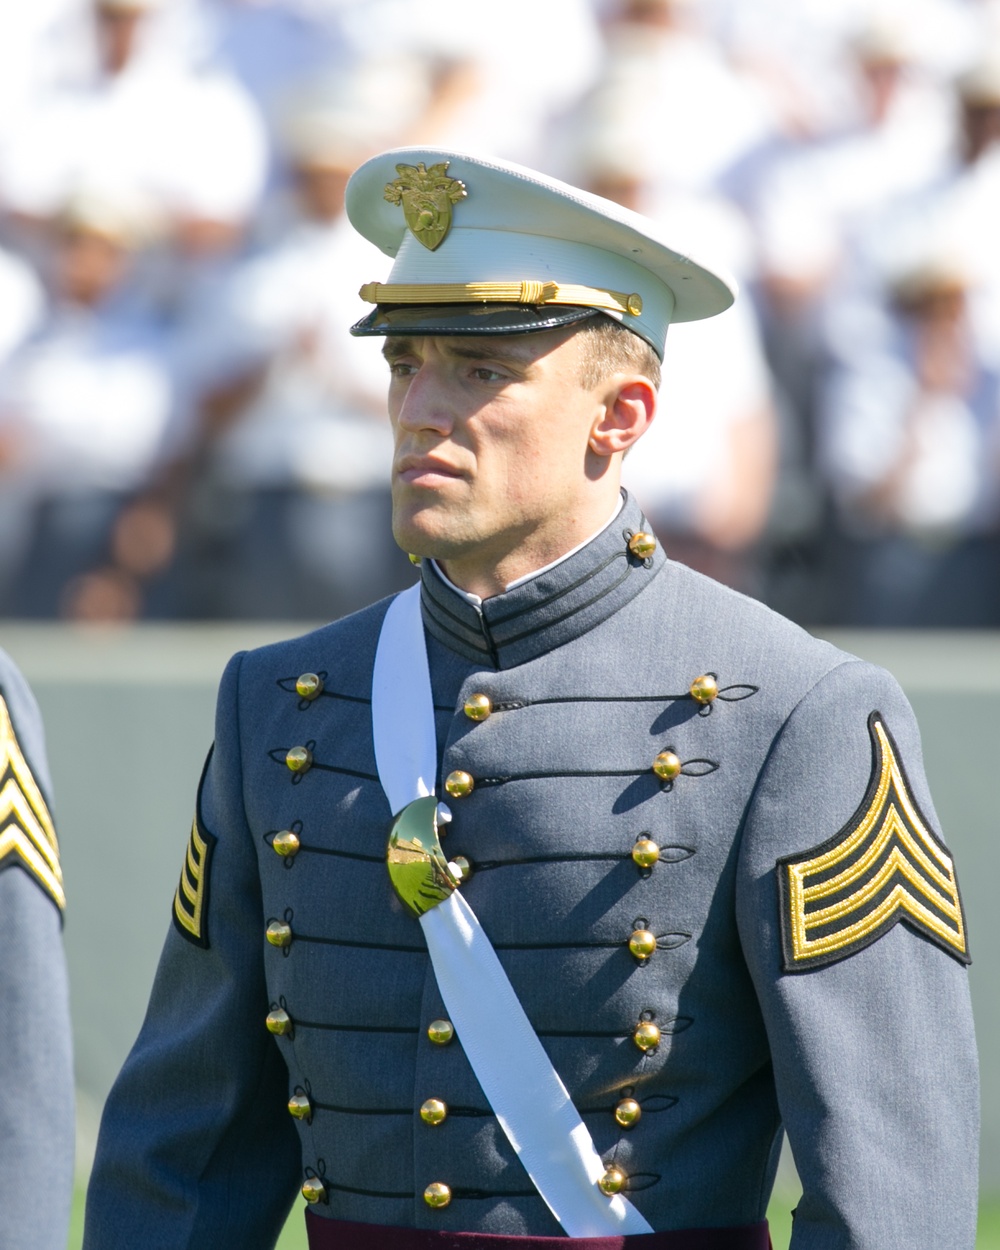 Cadet enters Michie Stadium for graduation